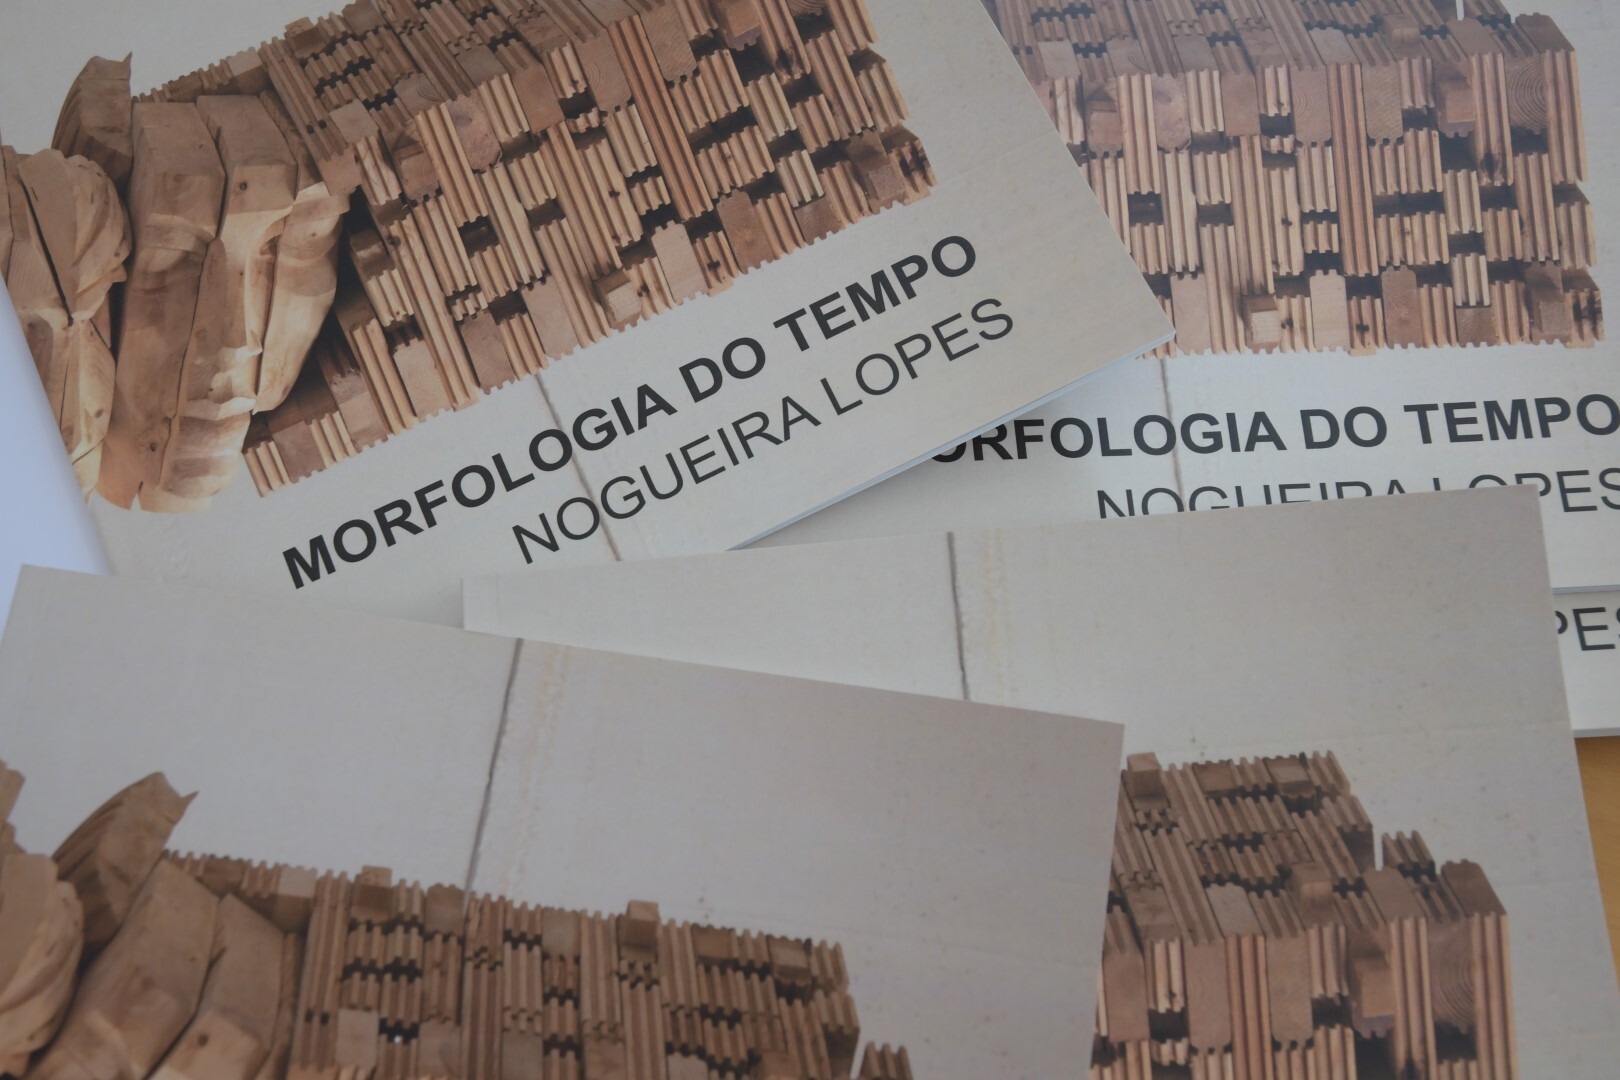 Inauguração da mostra Morfologia do Tempo: escultura Nogueira Lopes